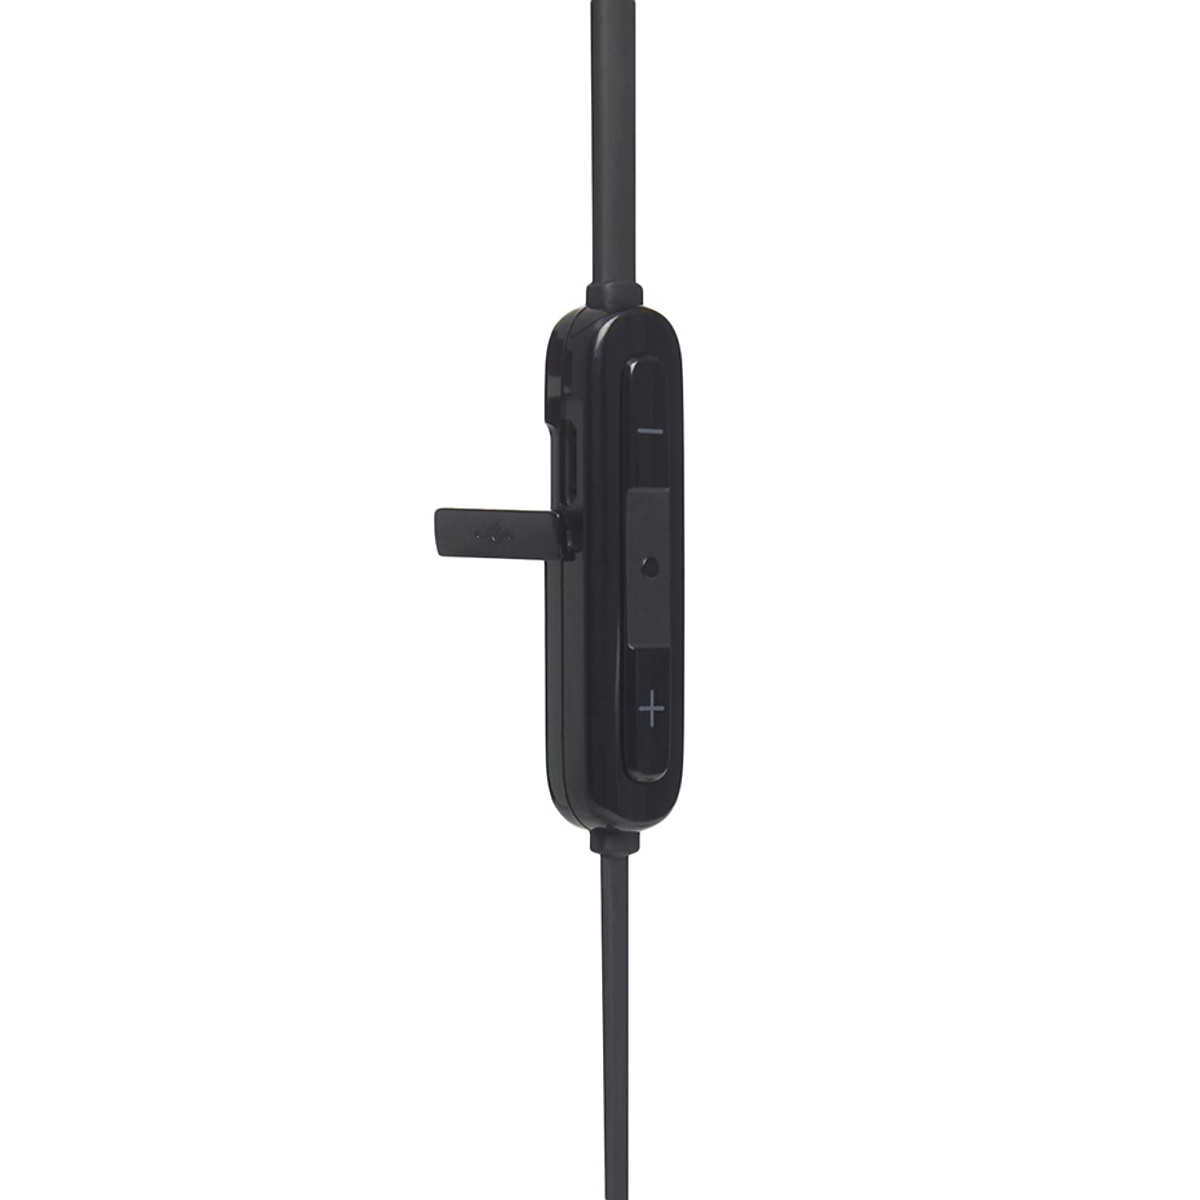 Tai Nghe Bluetooth Thể Thao JBL T110BT - Hàng Chính Hãng, có thiết kế không dây cho ae dùng